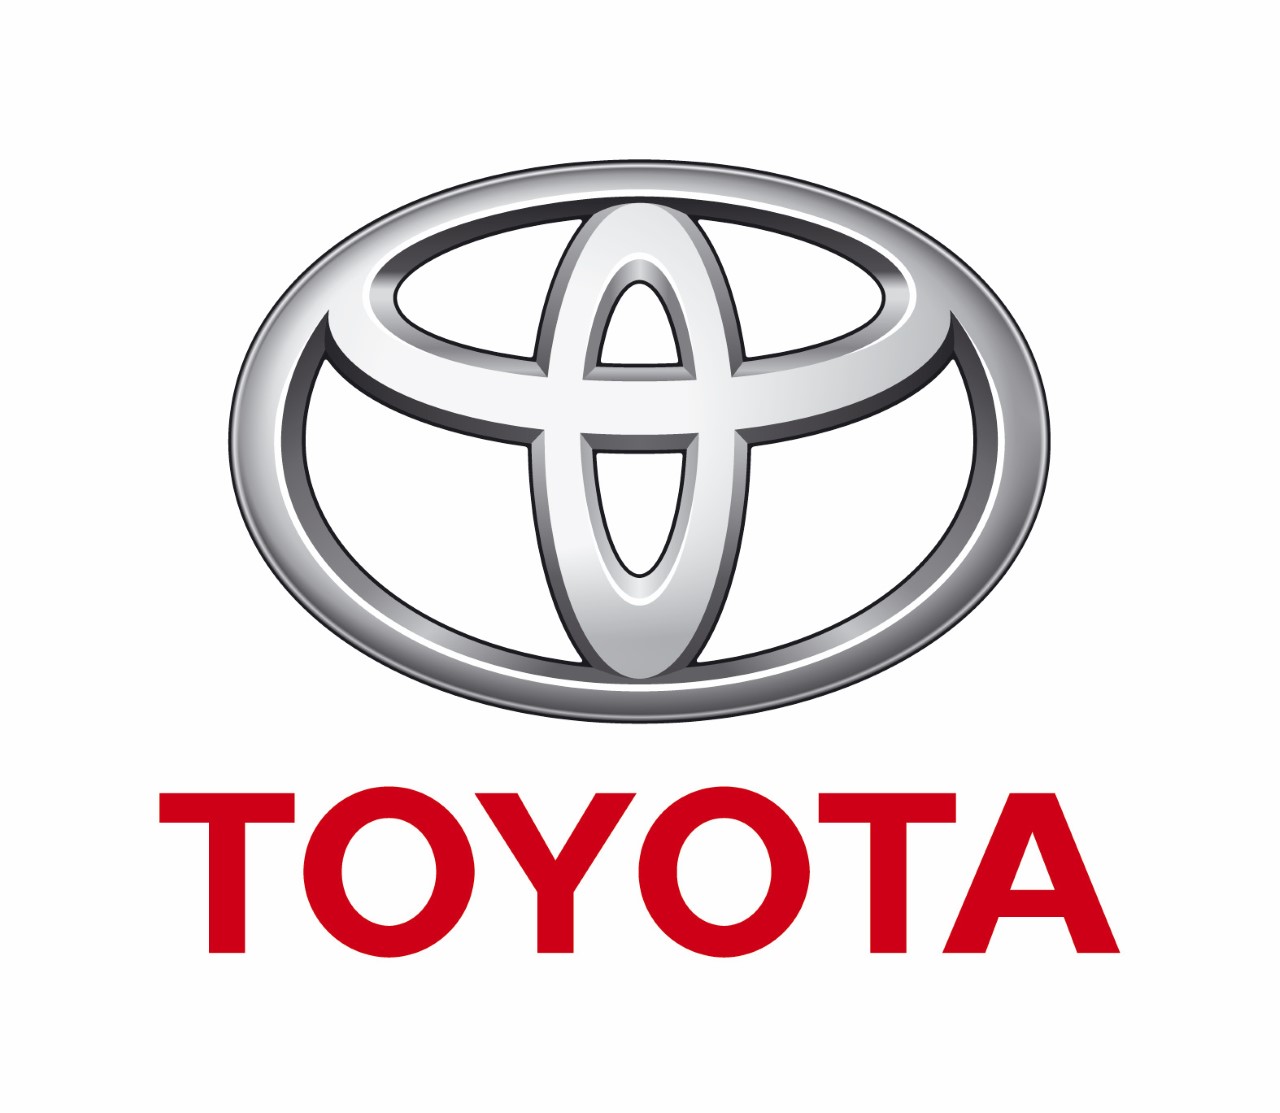 Toyota najcenniejszą marką motoryzacyjną w rankingu magazynu Forbes 